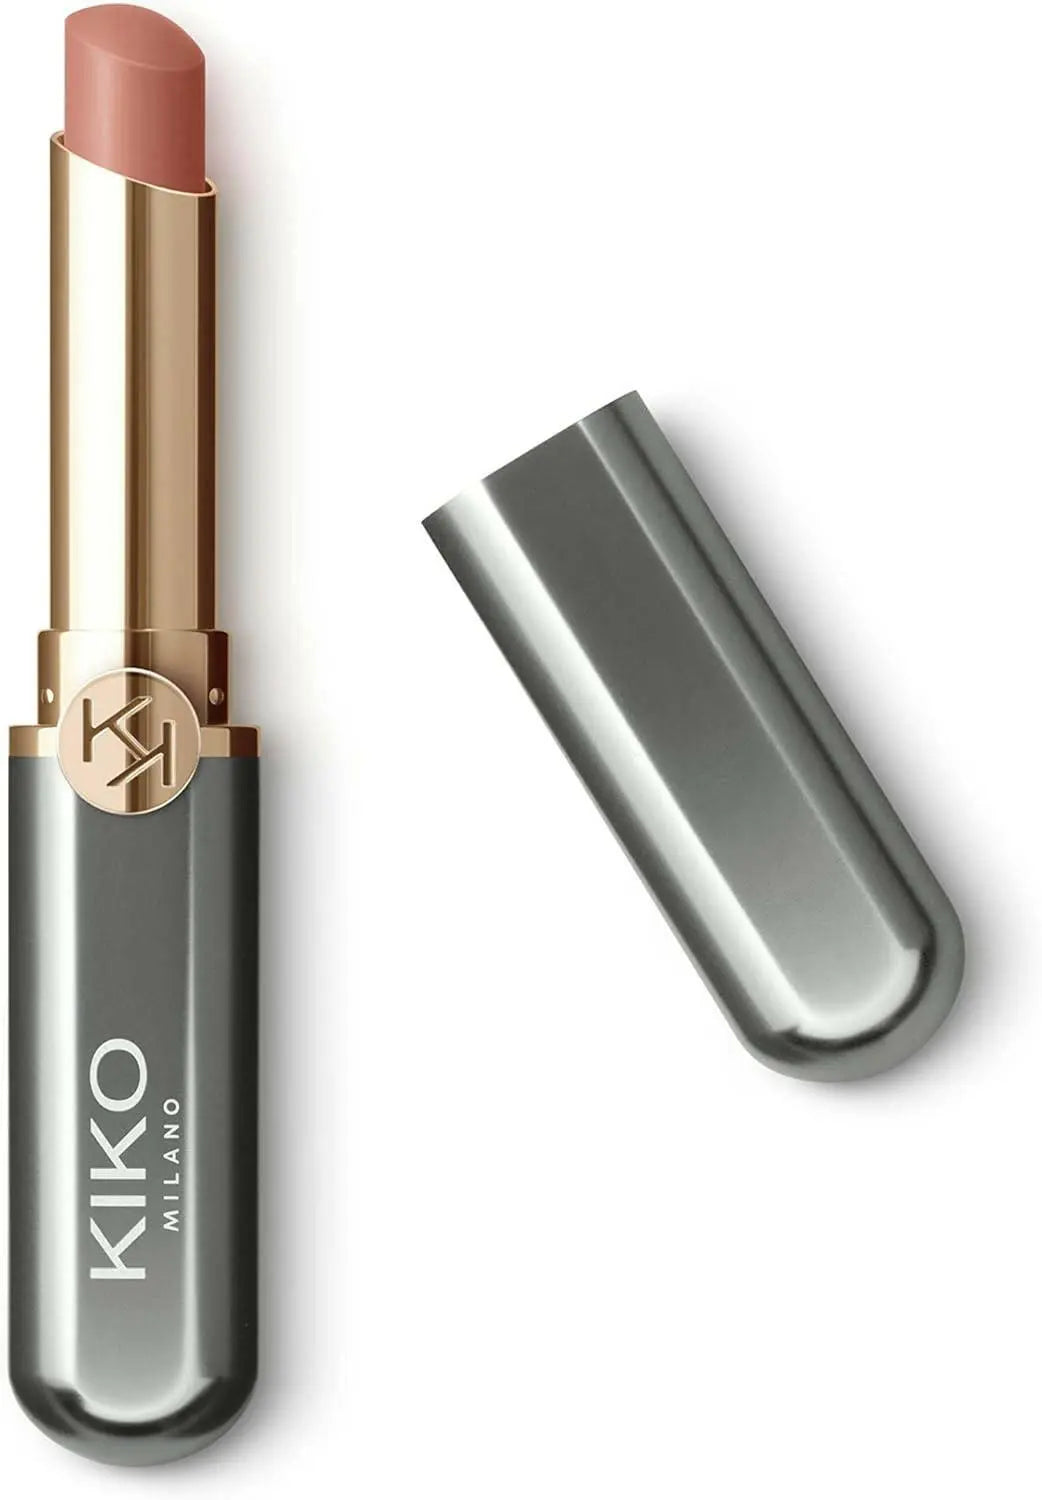 KIKO Milano Unlimited Stylo 02 | Long-Lasting 10-Hour Hold Creamy Lipstick, Cappuccino